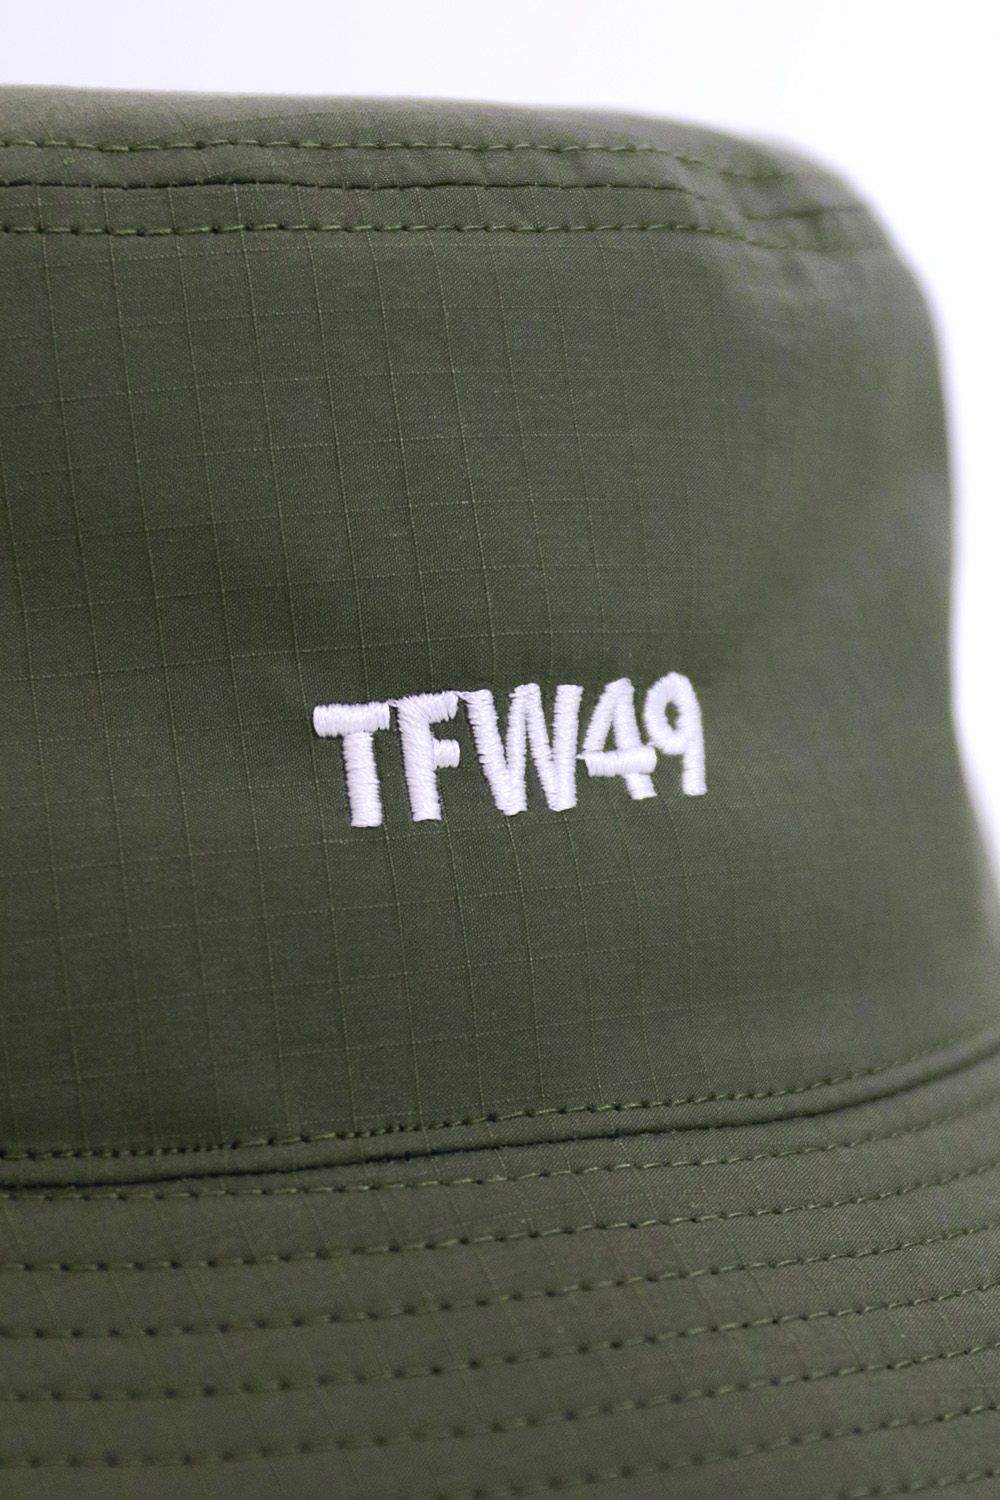 TFW49 - TFW49 BUCKET HAT / コーデュラ バケットハット | laid-back